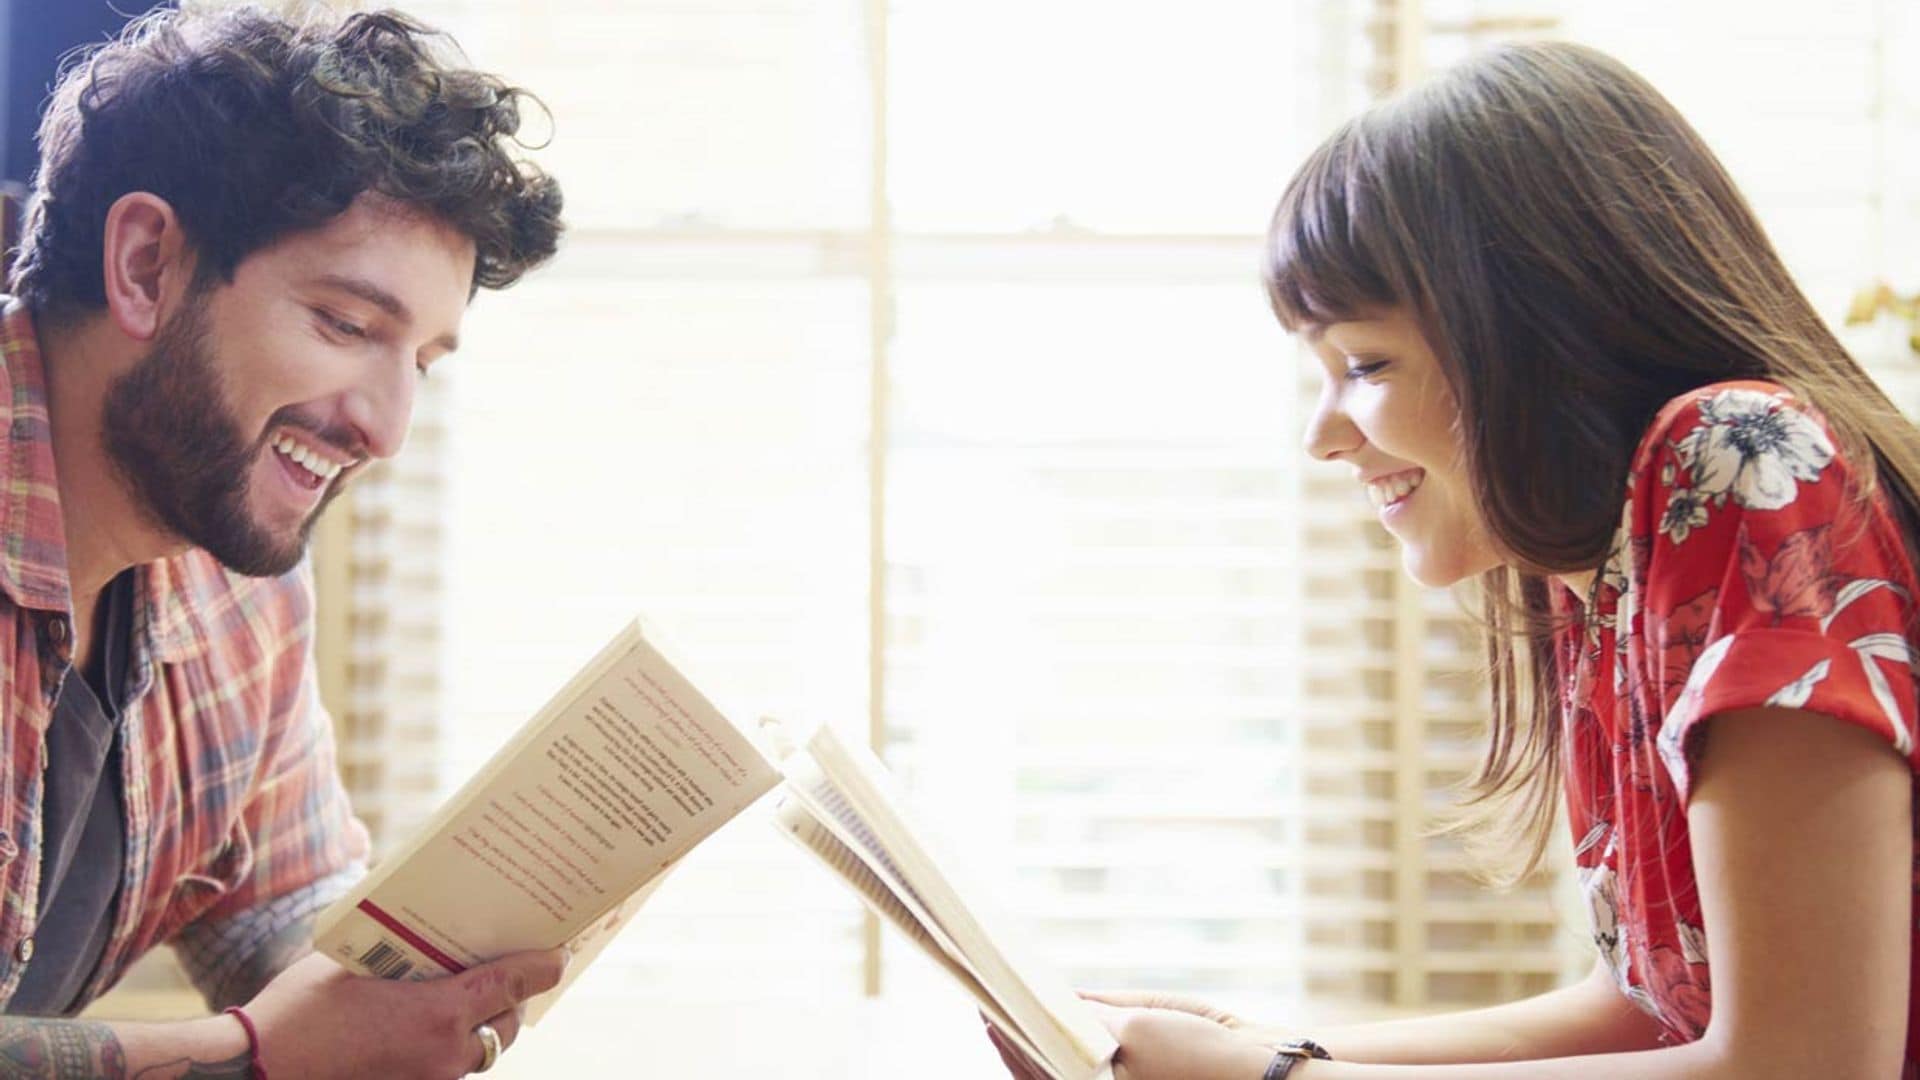 ¿Vives en pareja? Estos libros te ayudarán a comprender mejor el amor y las relaciones